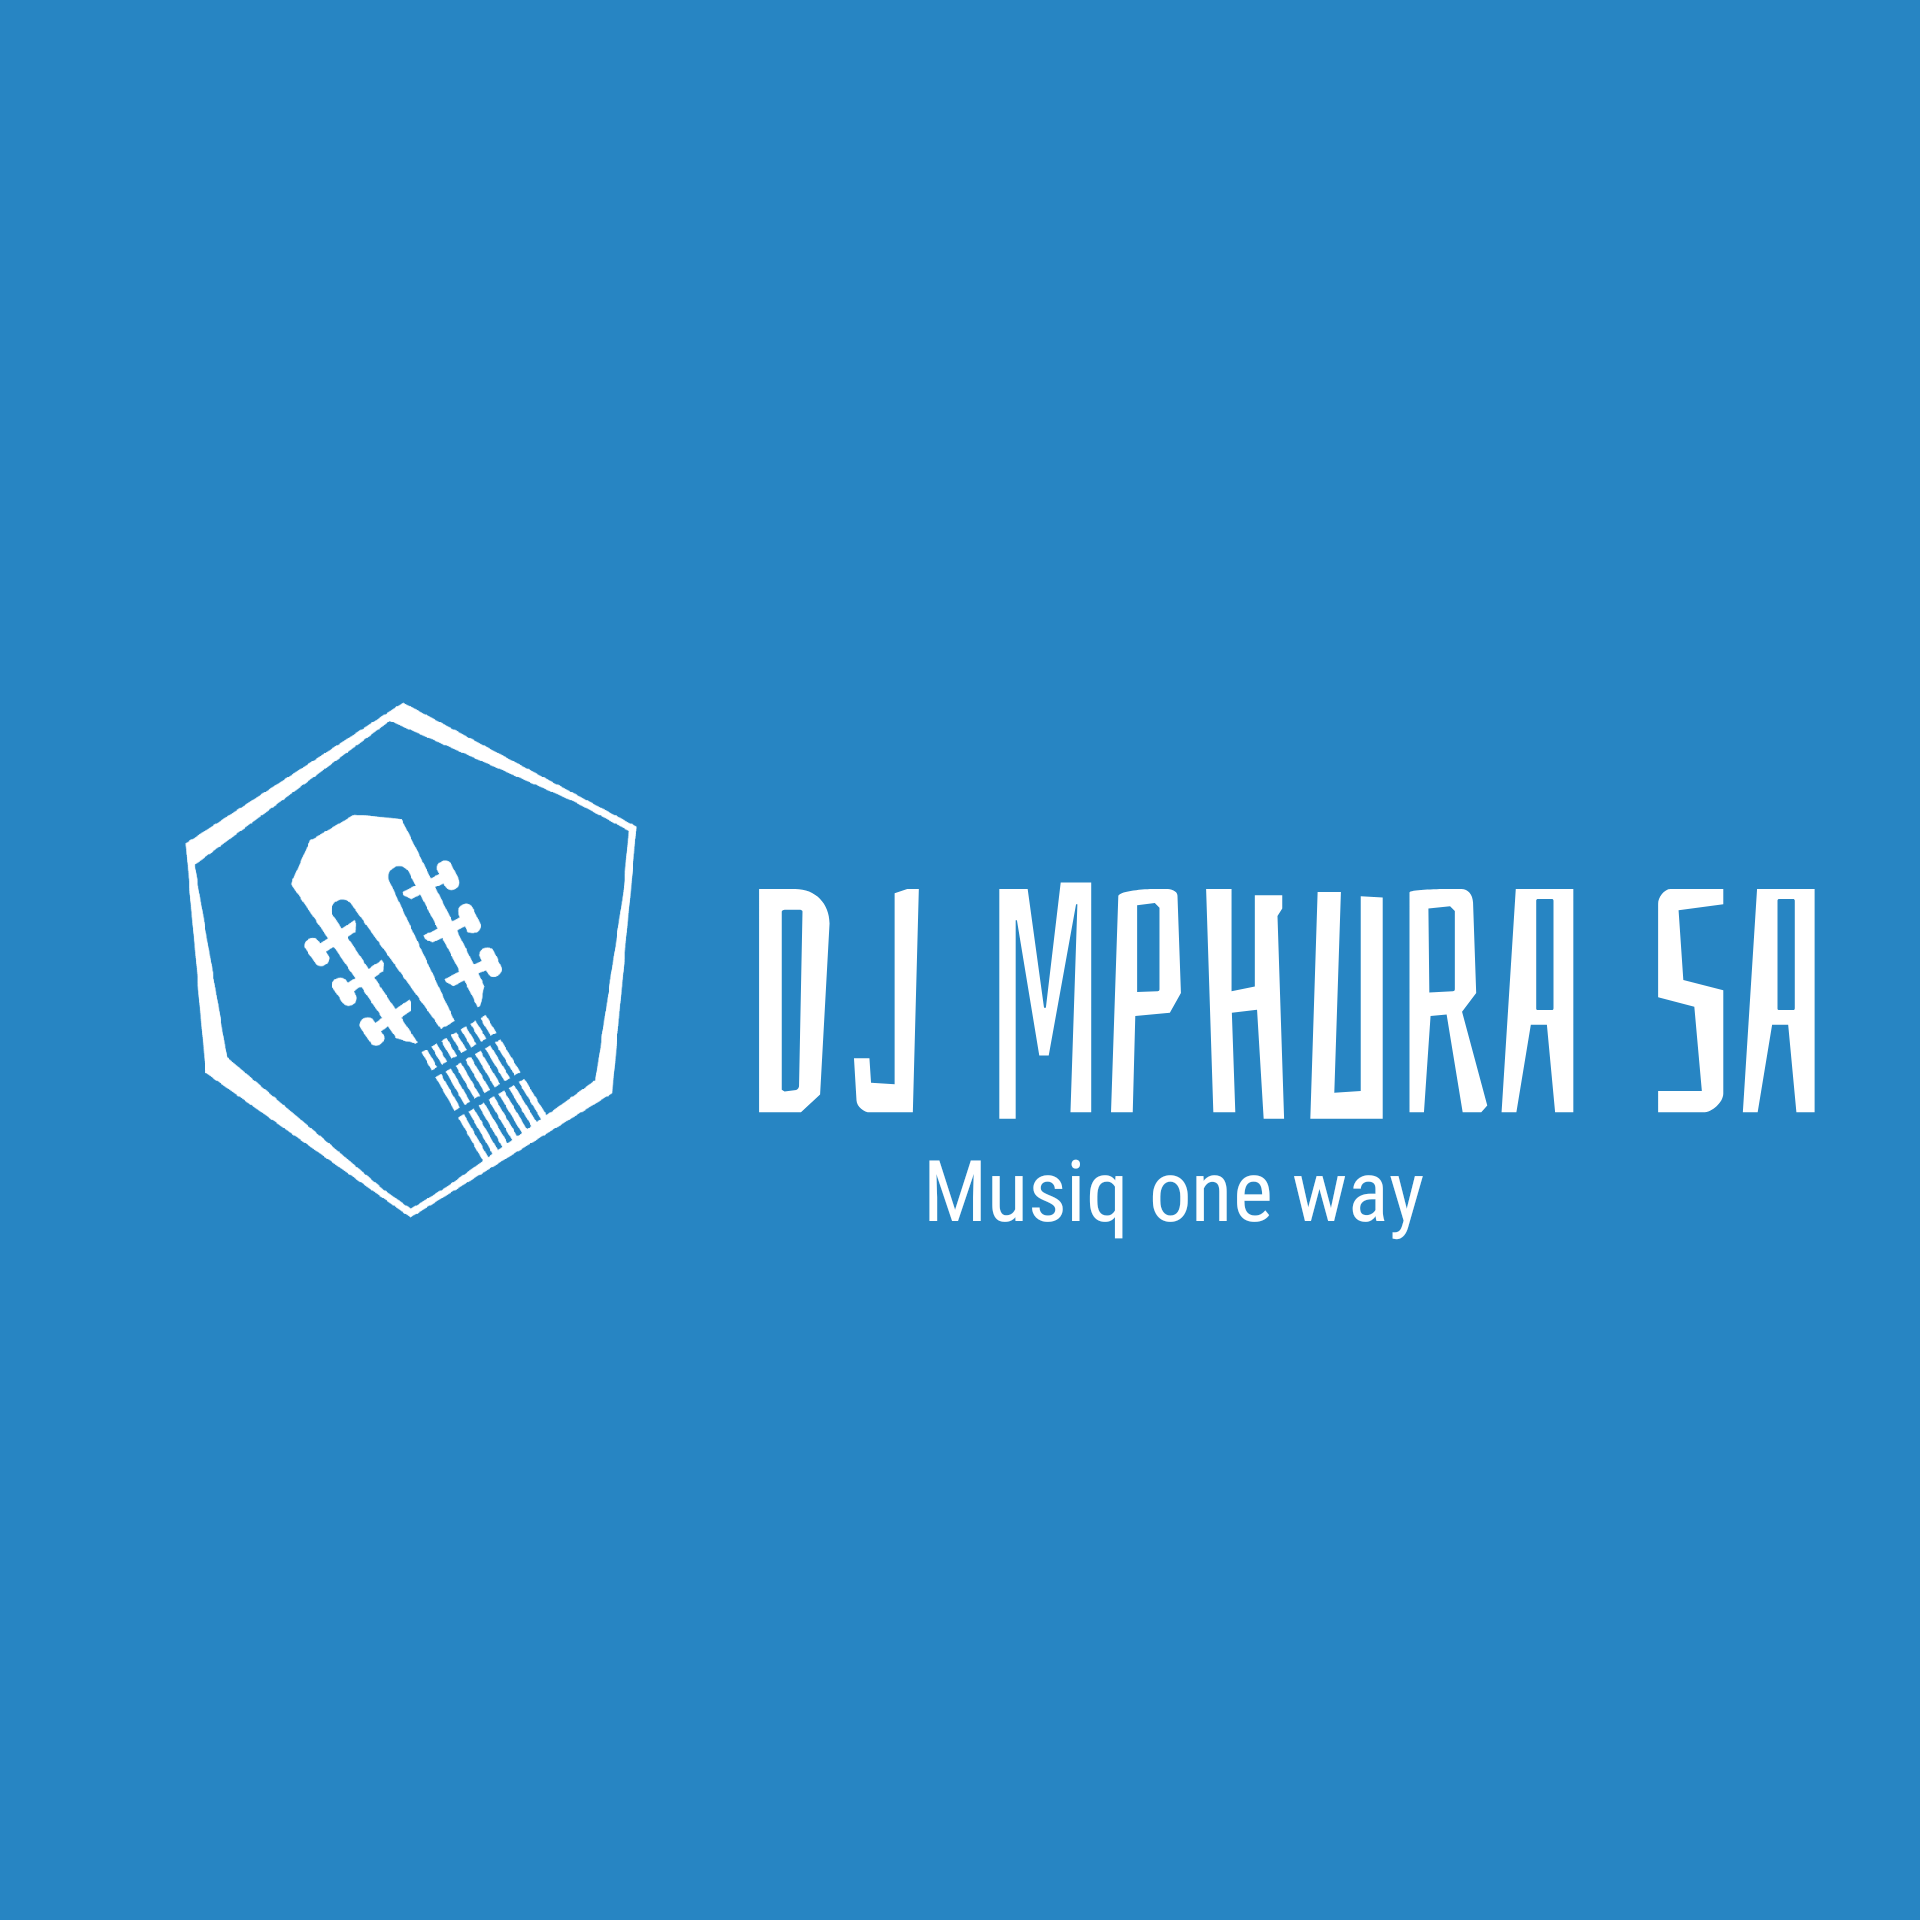 The end - DJ Mphura SA